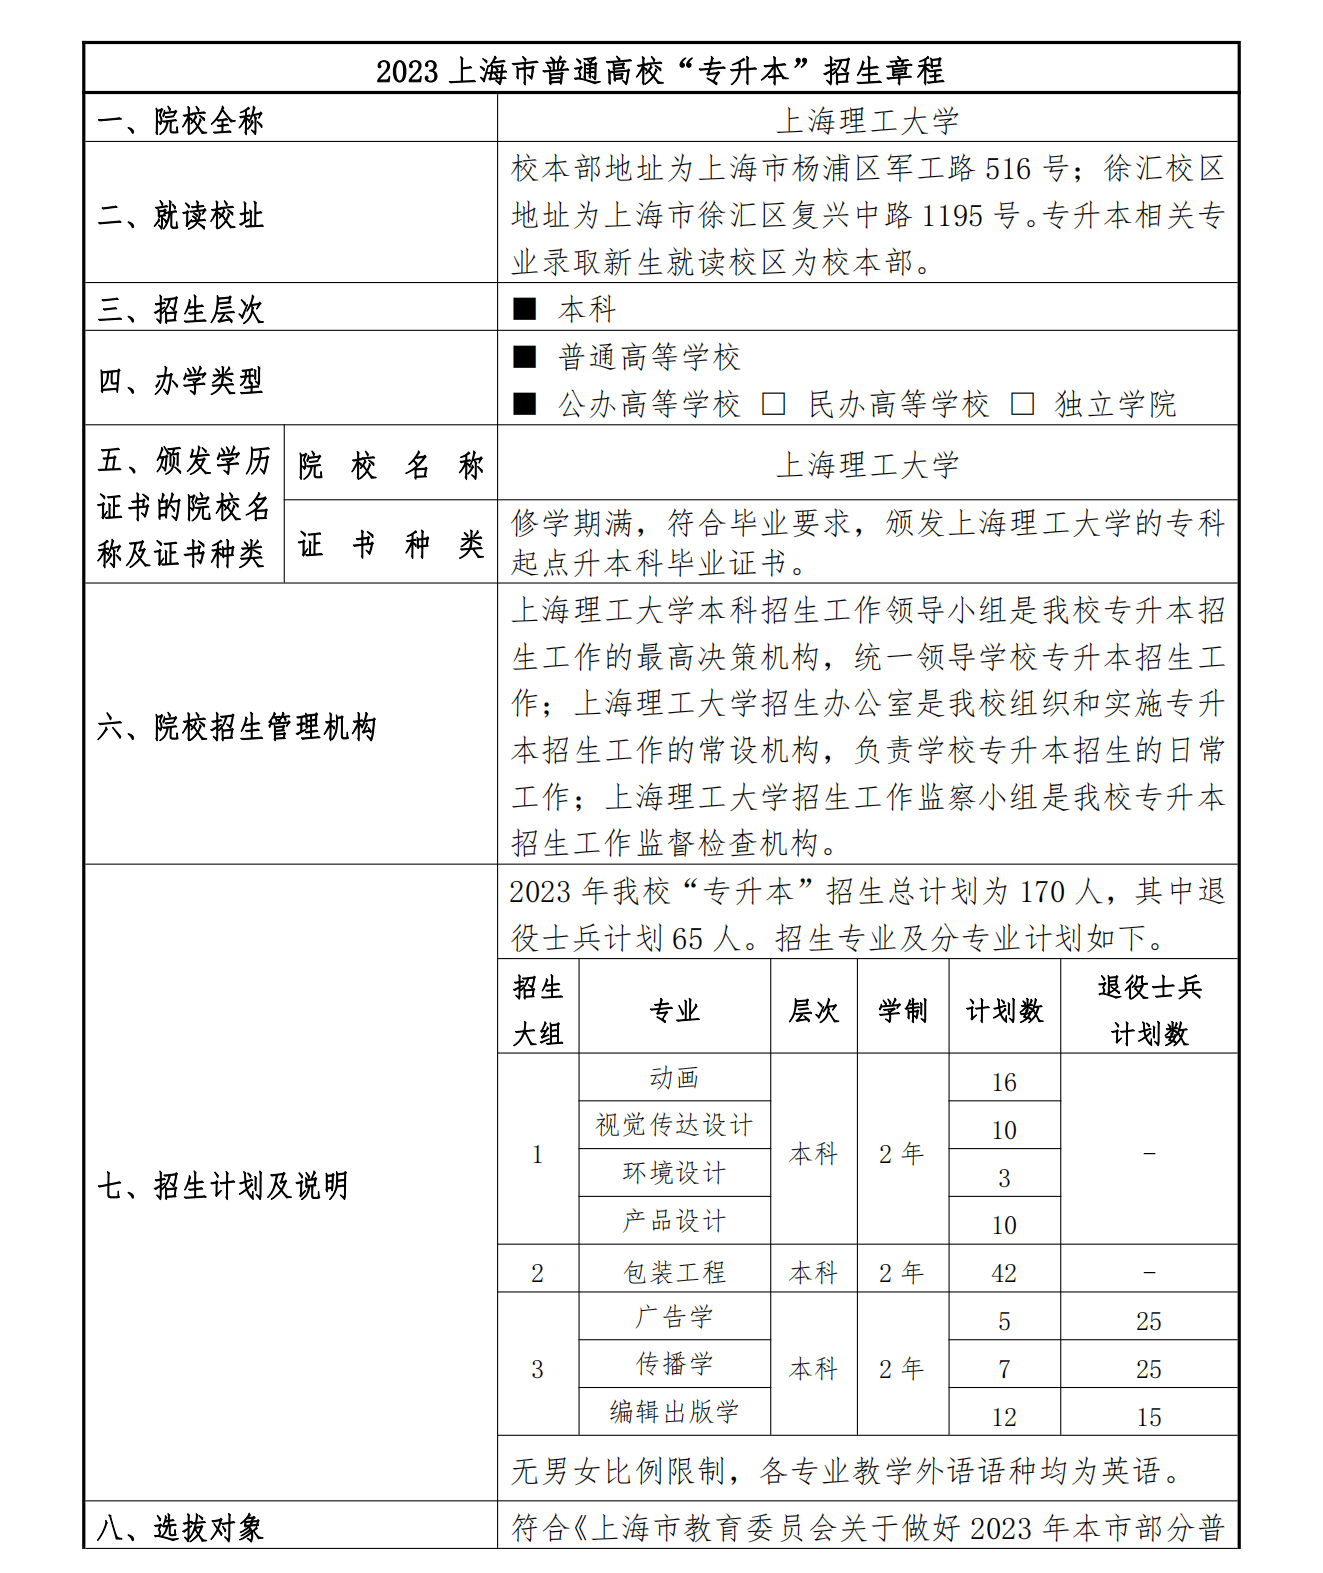 上海理工大学2023年专升本招生章程